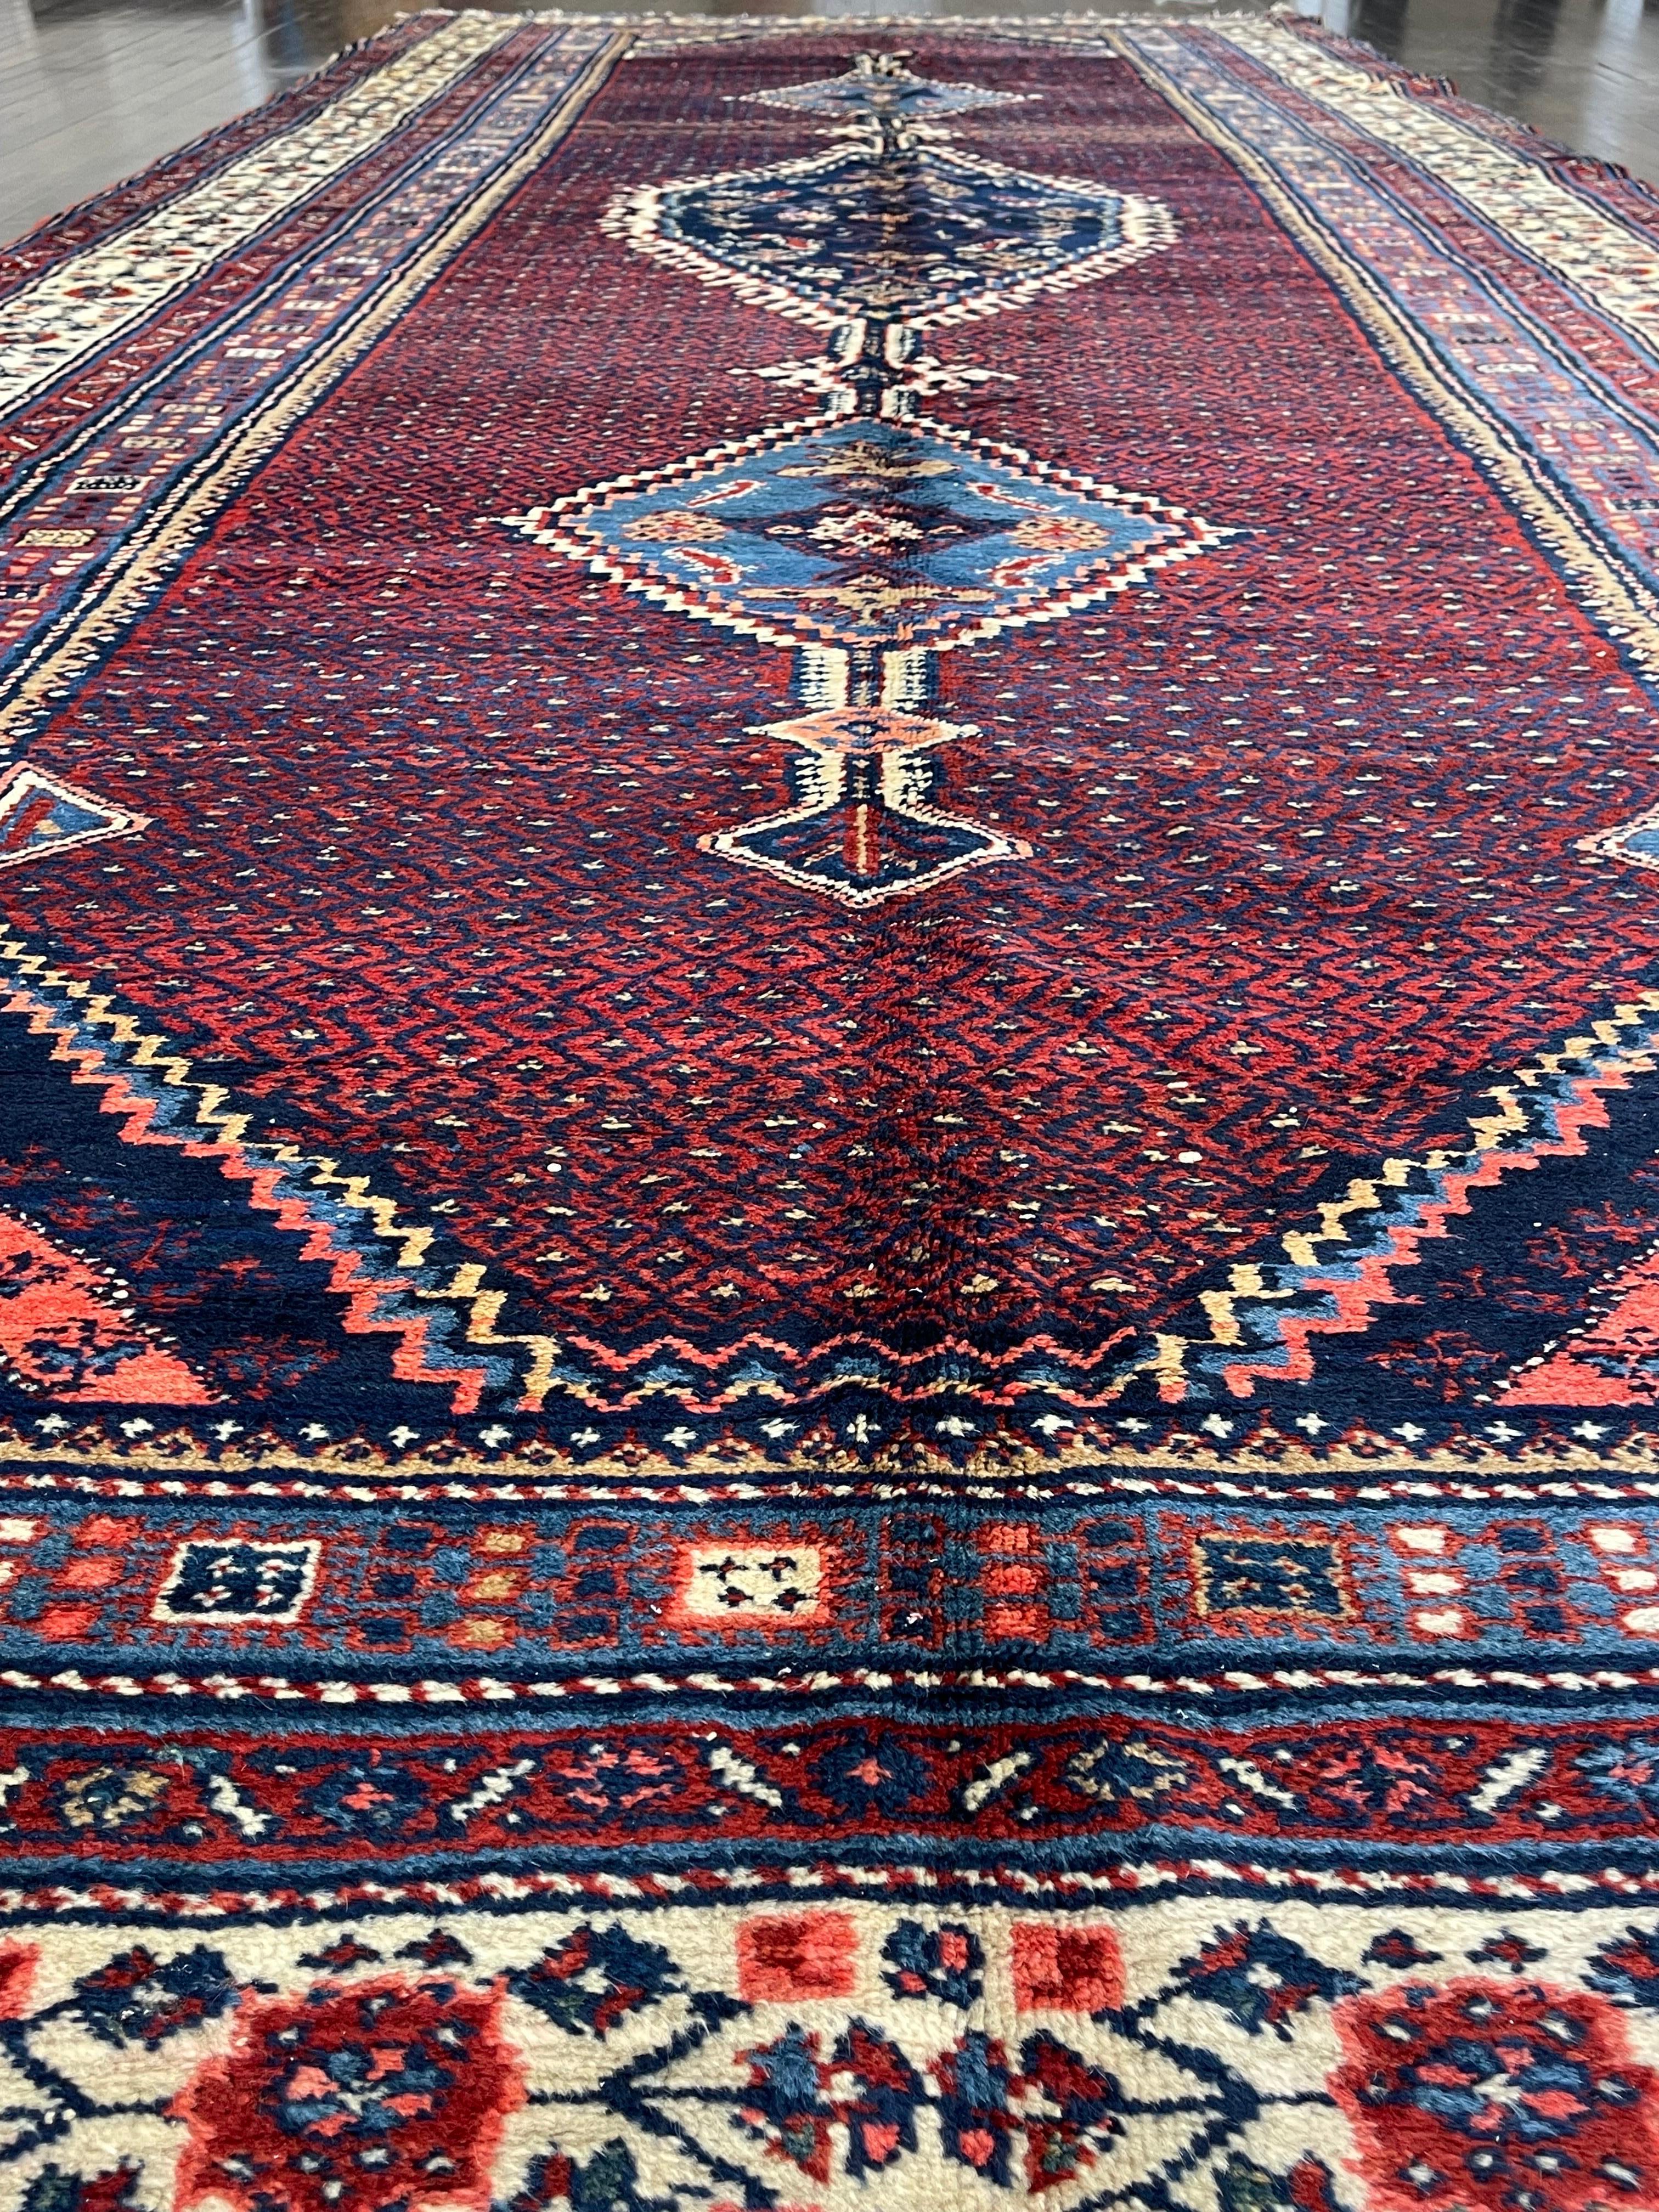 Antique Northwest Persian Corridor Carpet circa 1920 In Excellent Condition For Sale In Morton Grove, IL